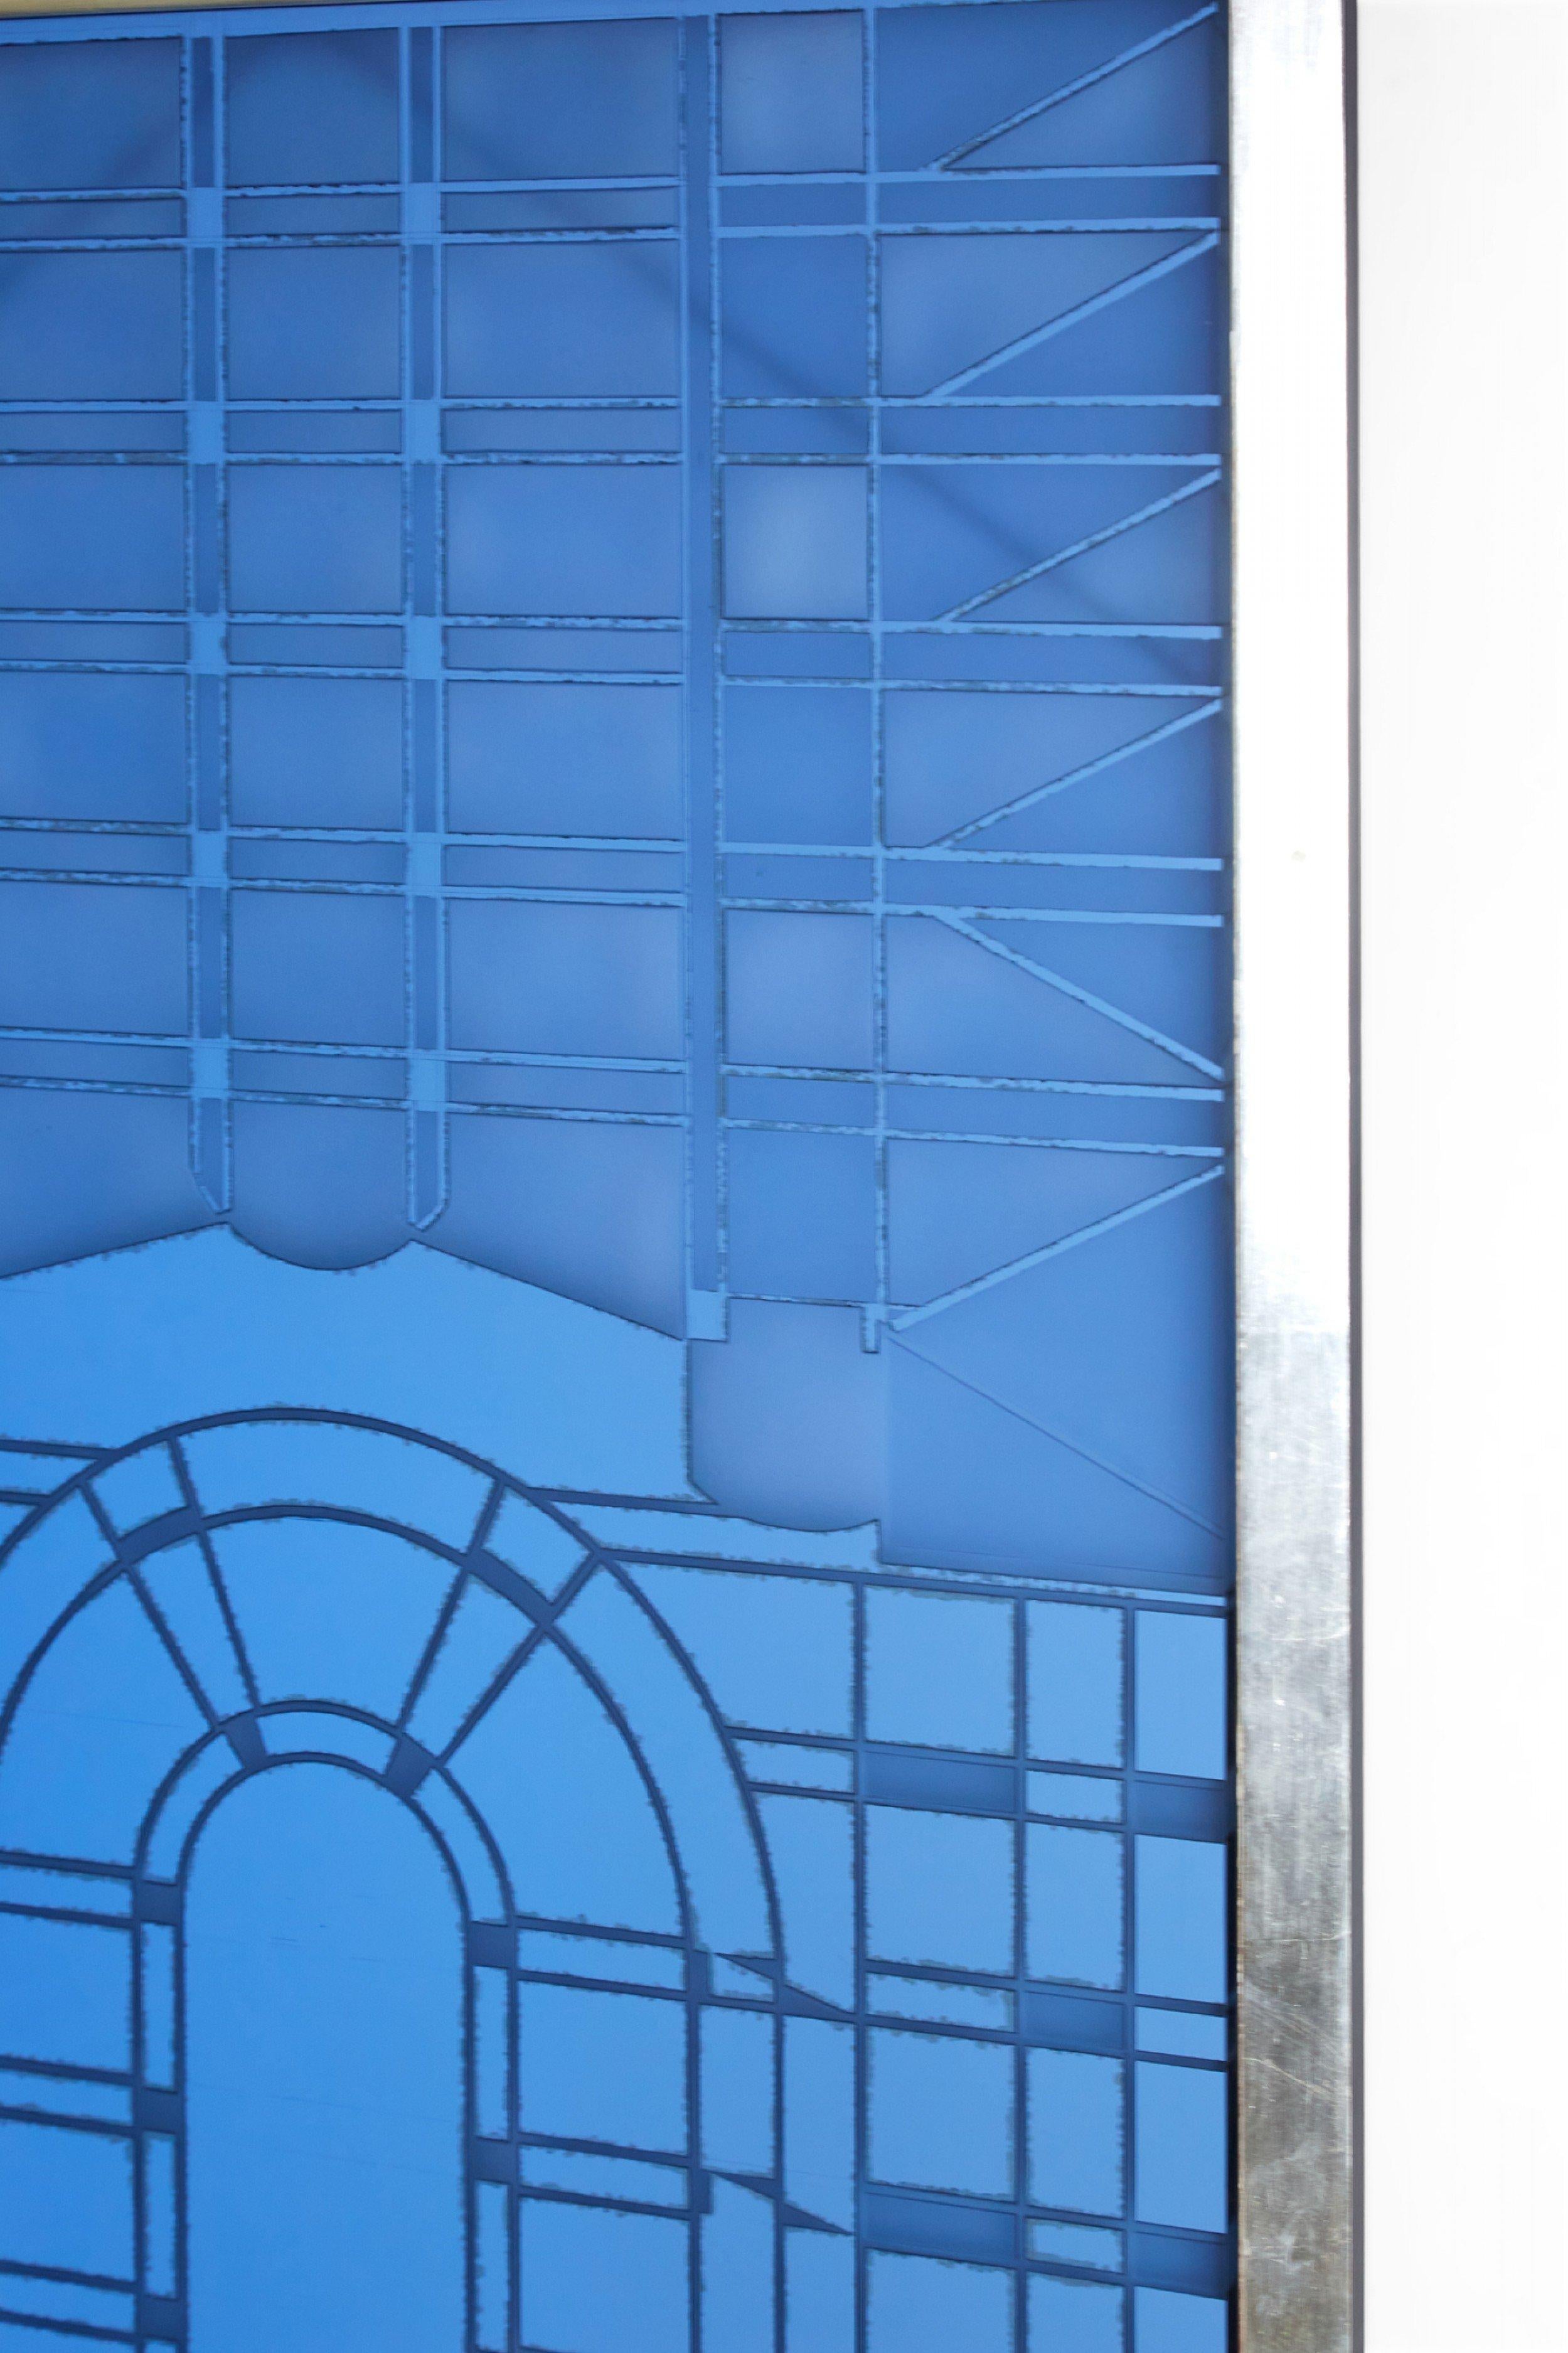 Panneau de miroir en verre encadré de style Art déco américain présentant des motifs géométriques en bleu et argent dans un cadre rectangulaire à feuilles d'argent.
 